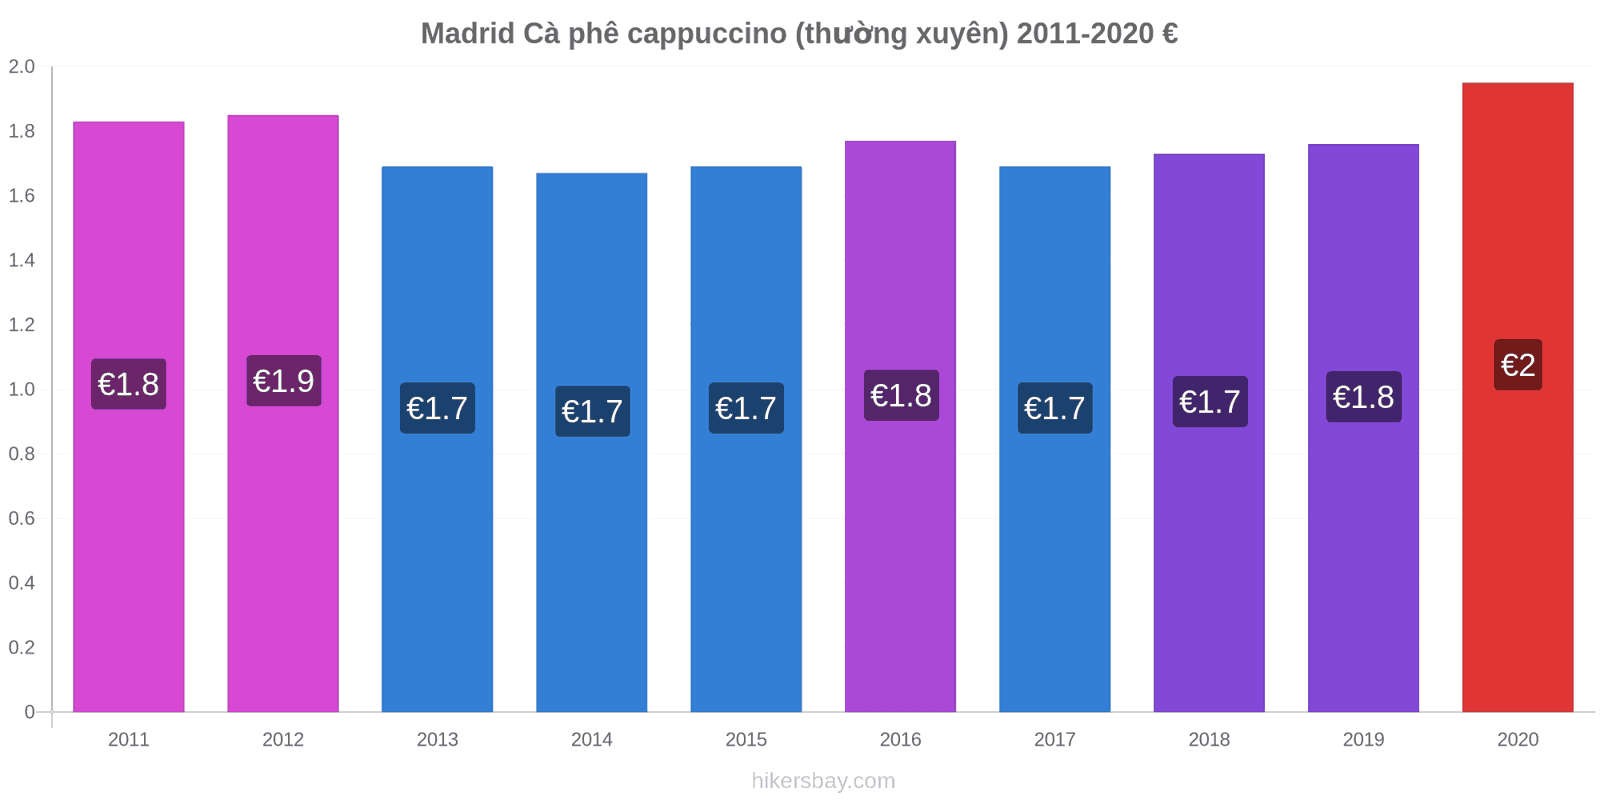 Madrid thay đổi giá Cà phê cappuccino (thường xuyên) hikersbay.com